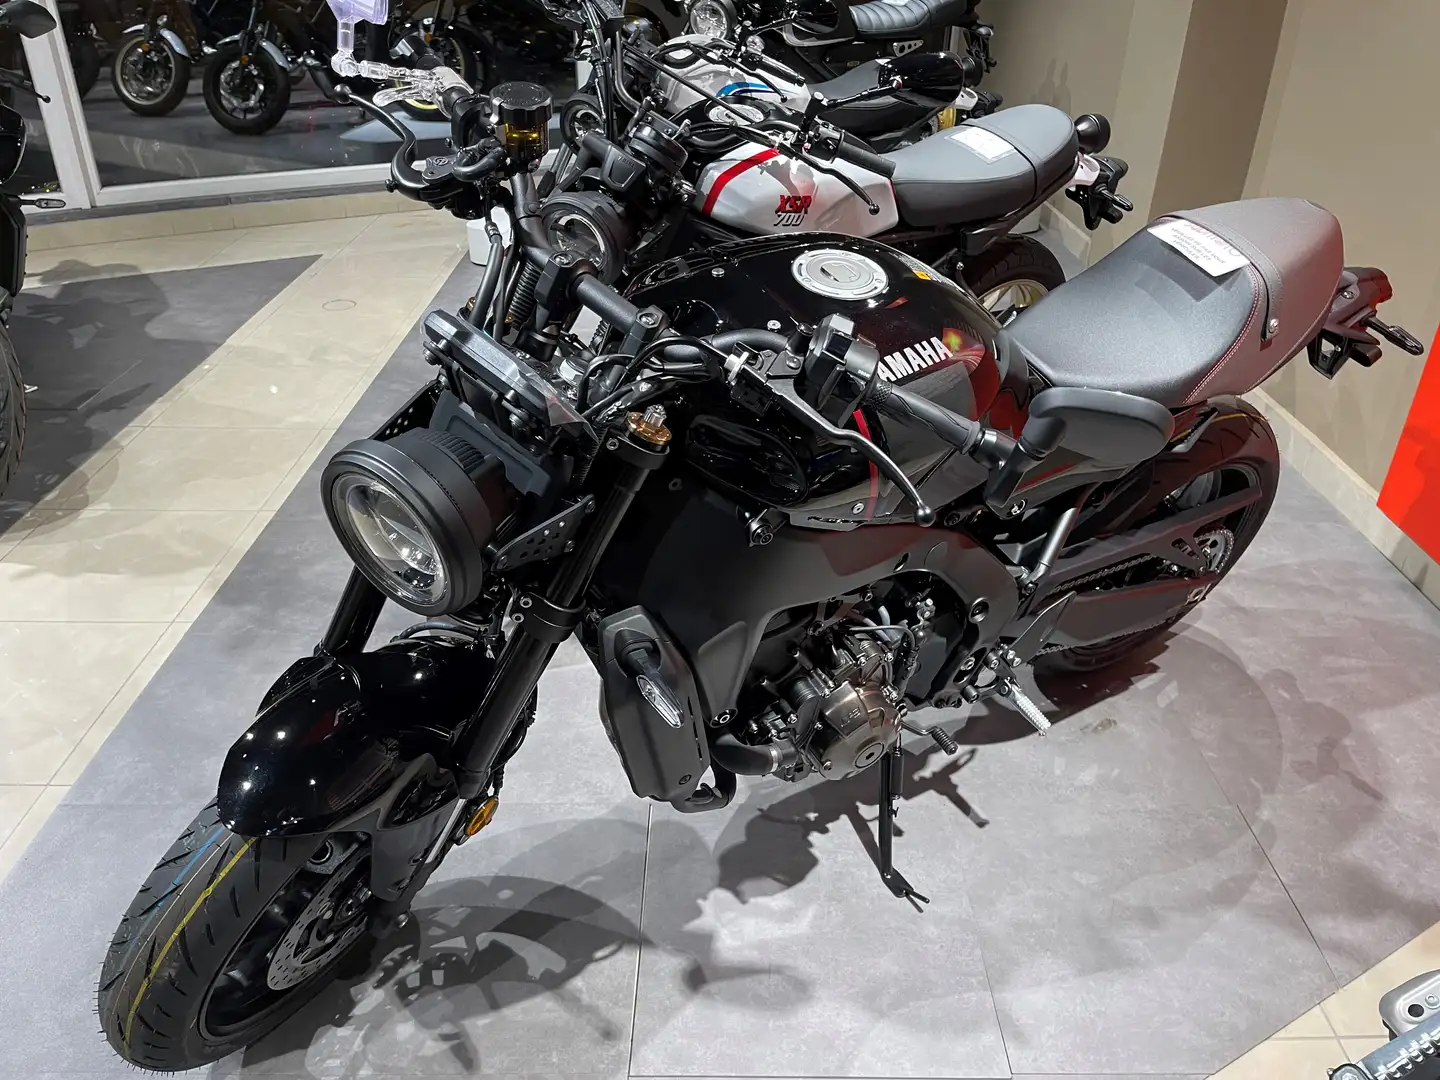 Yamaha XSR 900 Neuve - Disponible dans tous les coloris Negro - 2